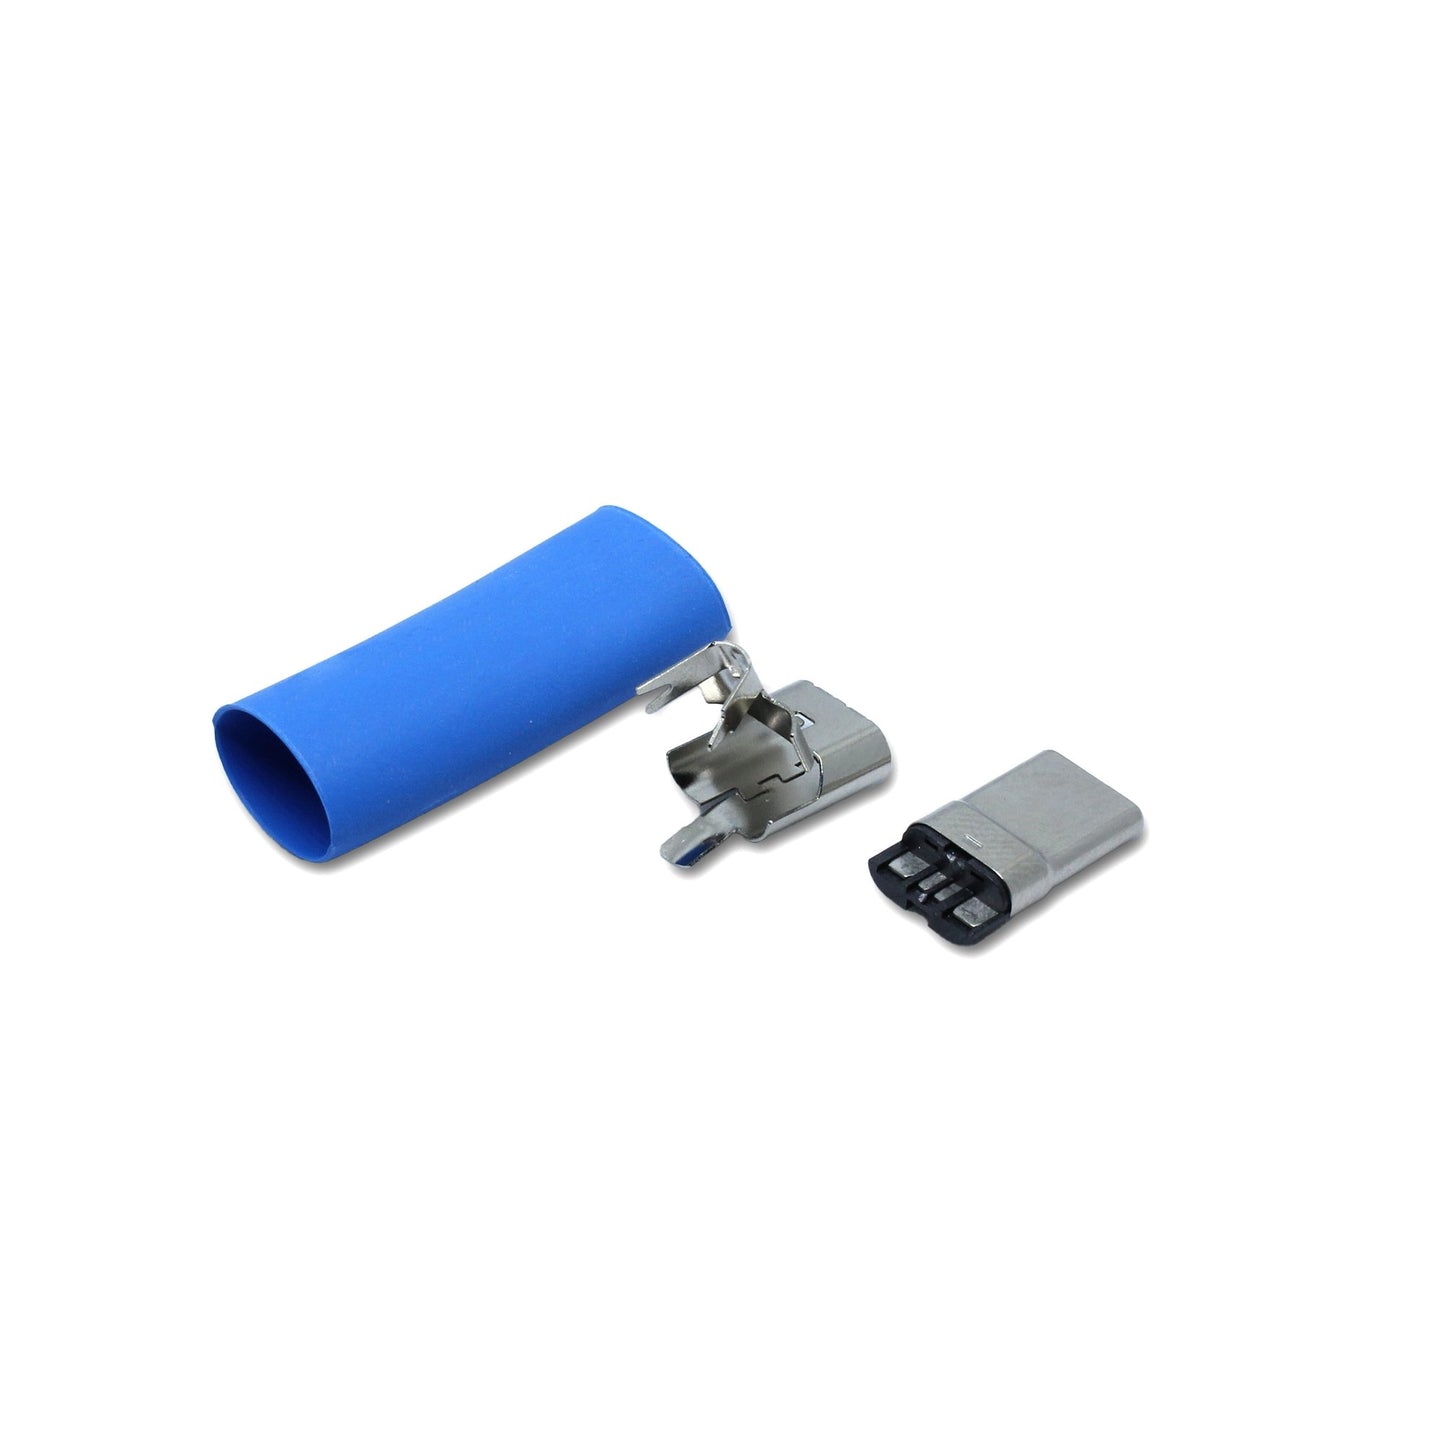 Ein Schrumpfschlauch in der Farbe blau und Metallteile für den USB C Anschluss